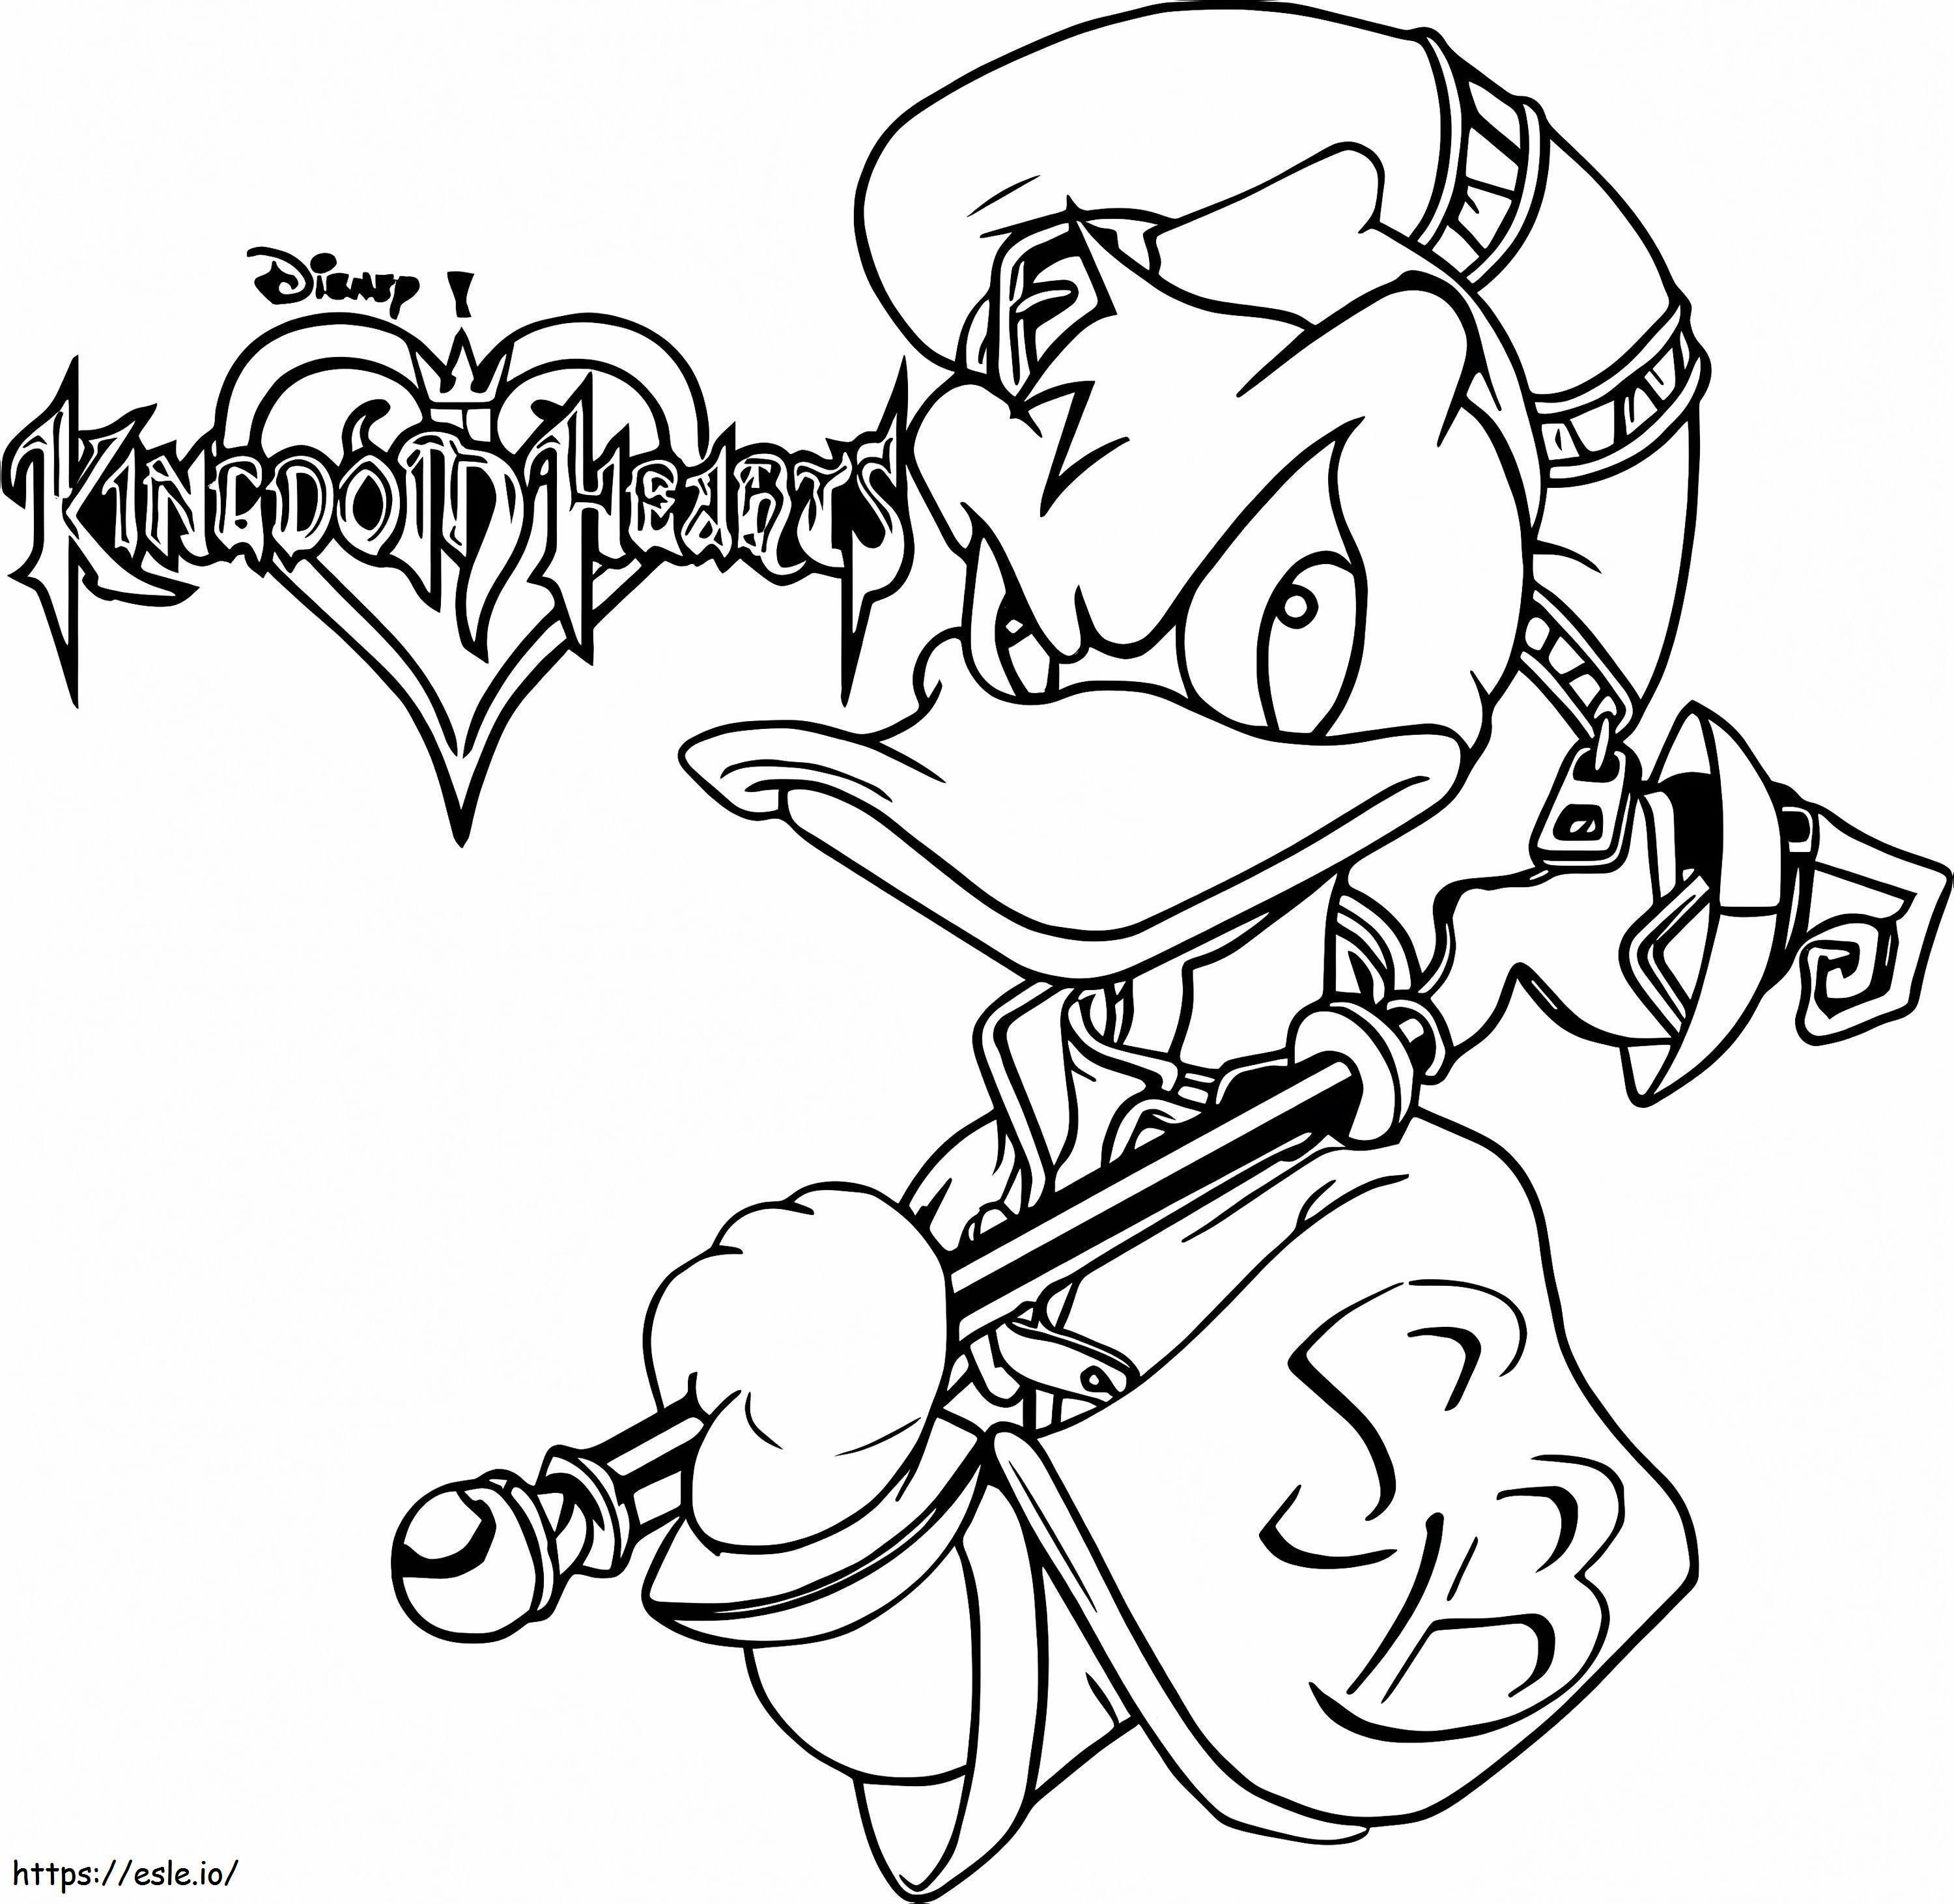 Donlad Duck a Kingdom Heartsből kifestő